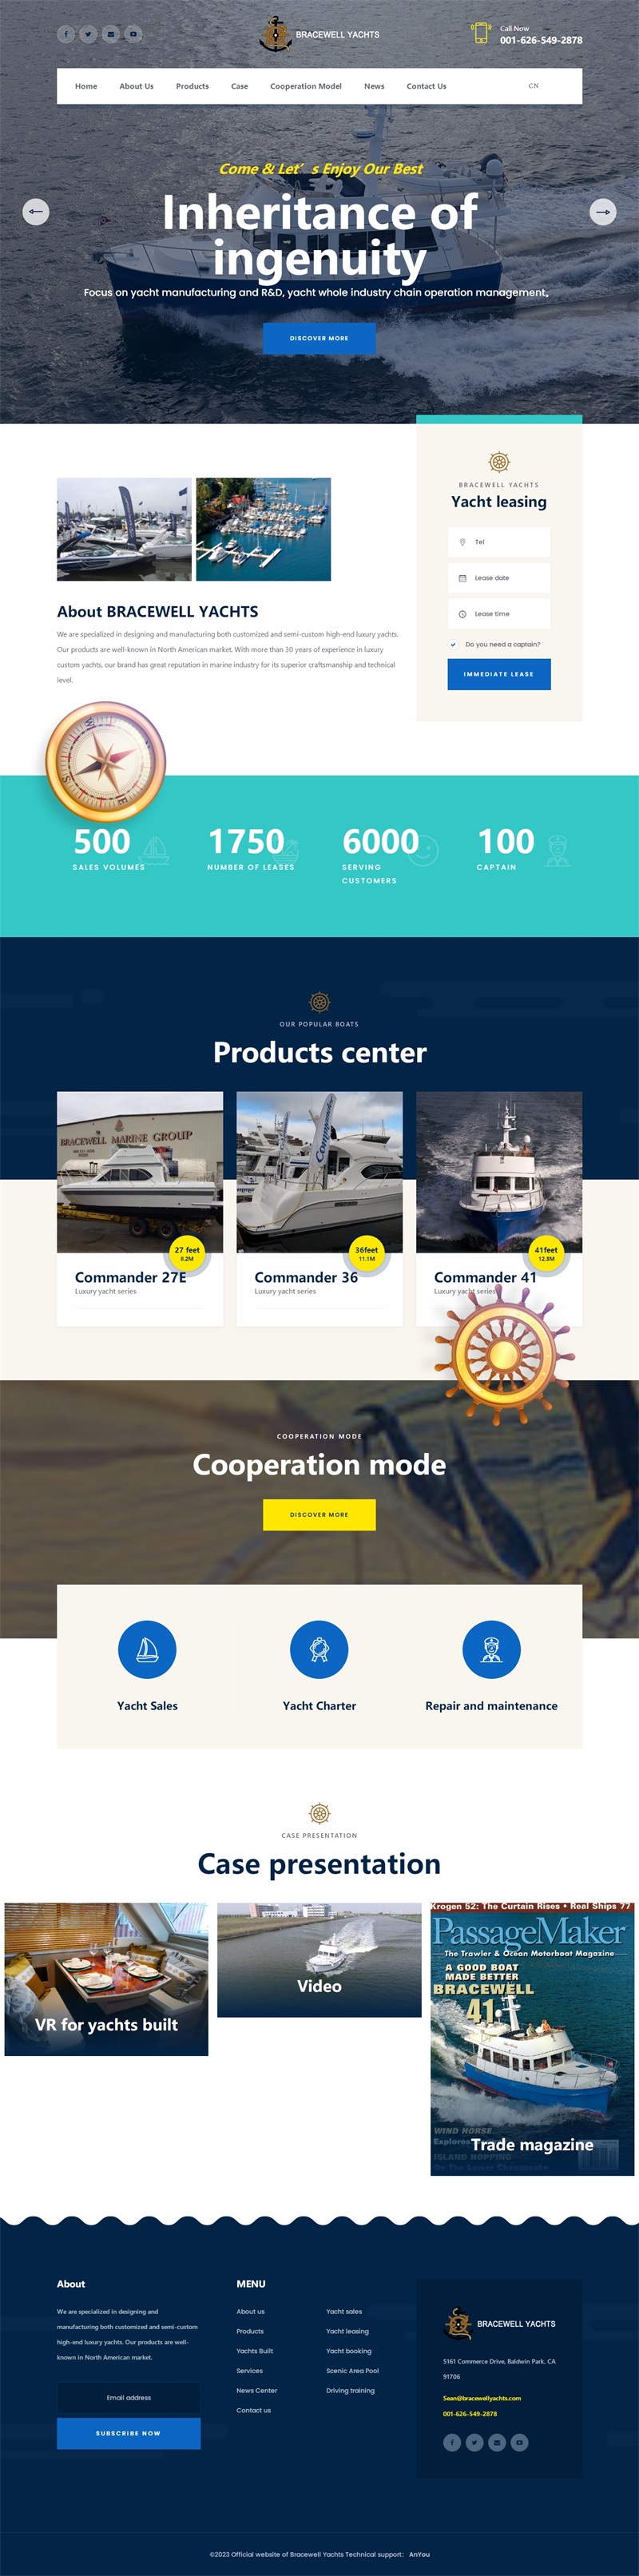 Official website of Bracewell Yachts.jpg